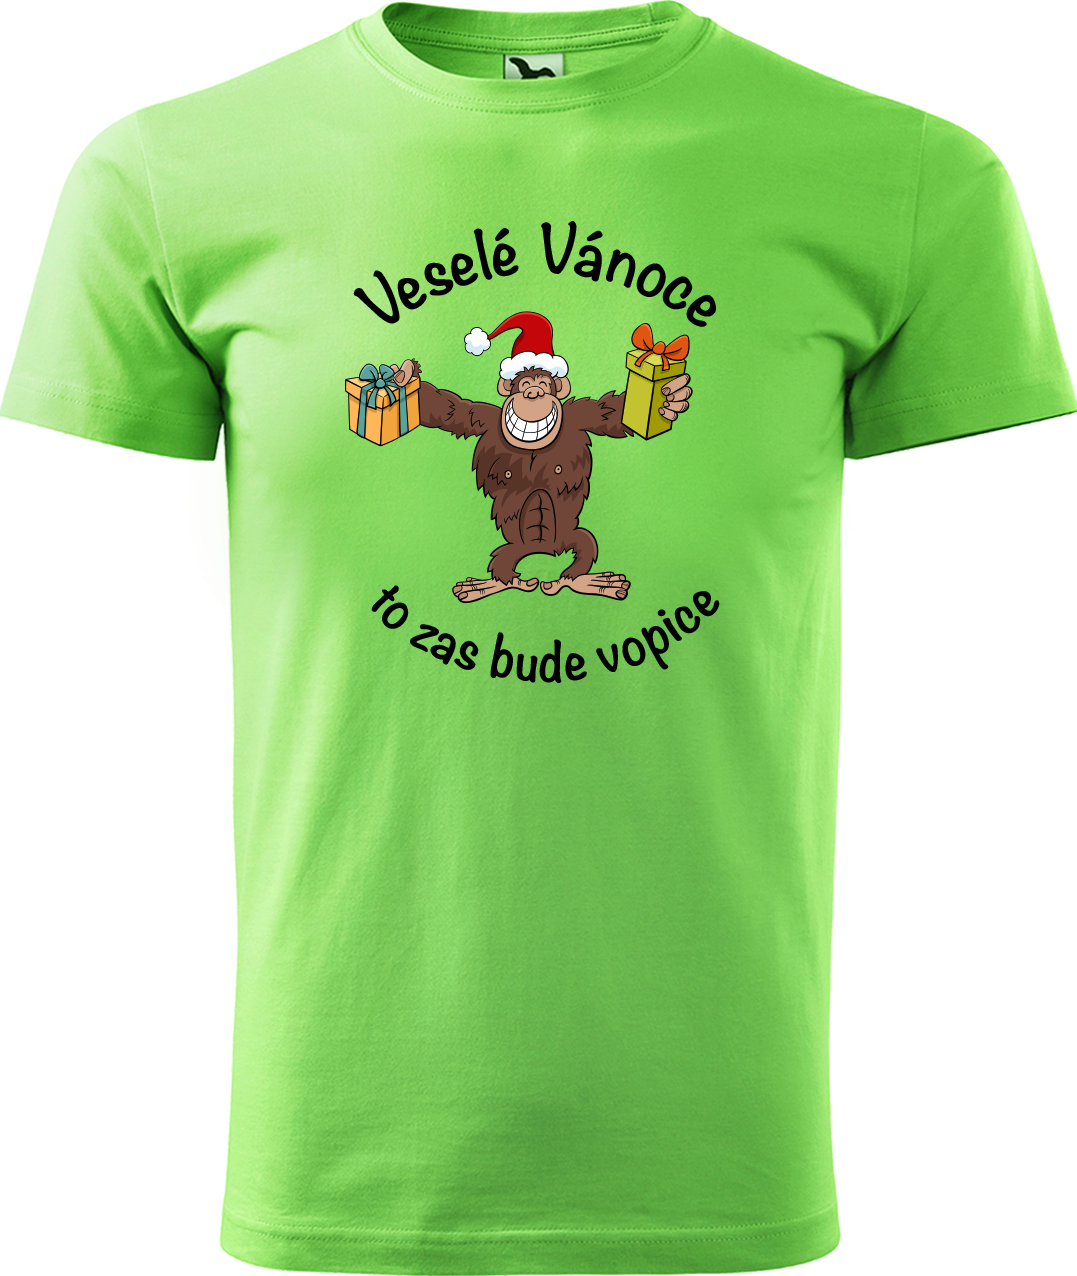 Pánské vánoční tričko - Veselé Vánoce to zas bude vopice (hnědý opičák) Velikost: XL, Barva: Apple Green (92)